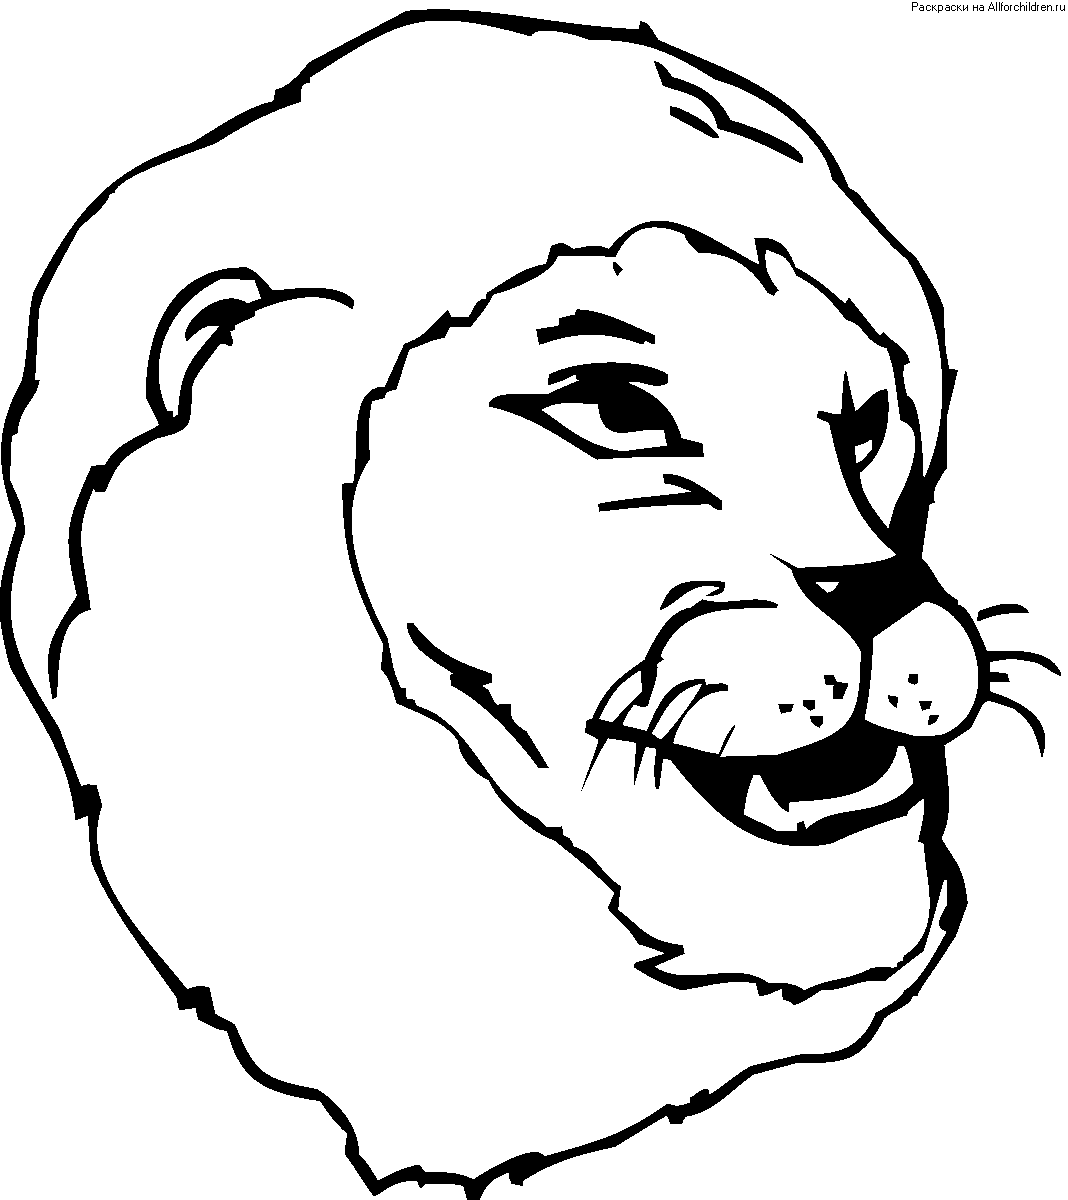 Лев улыбается